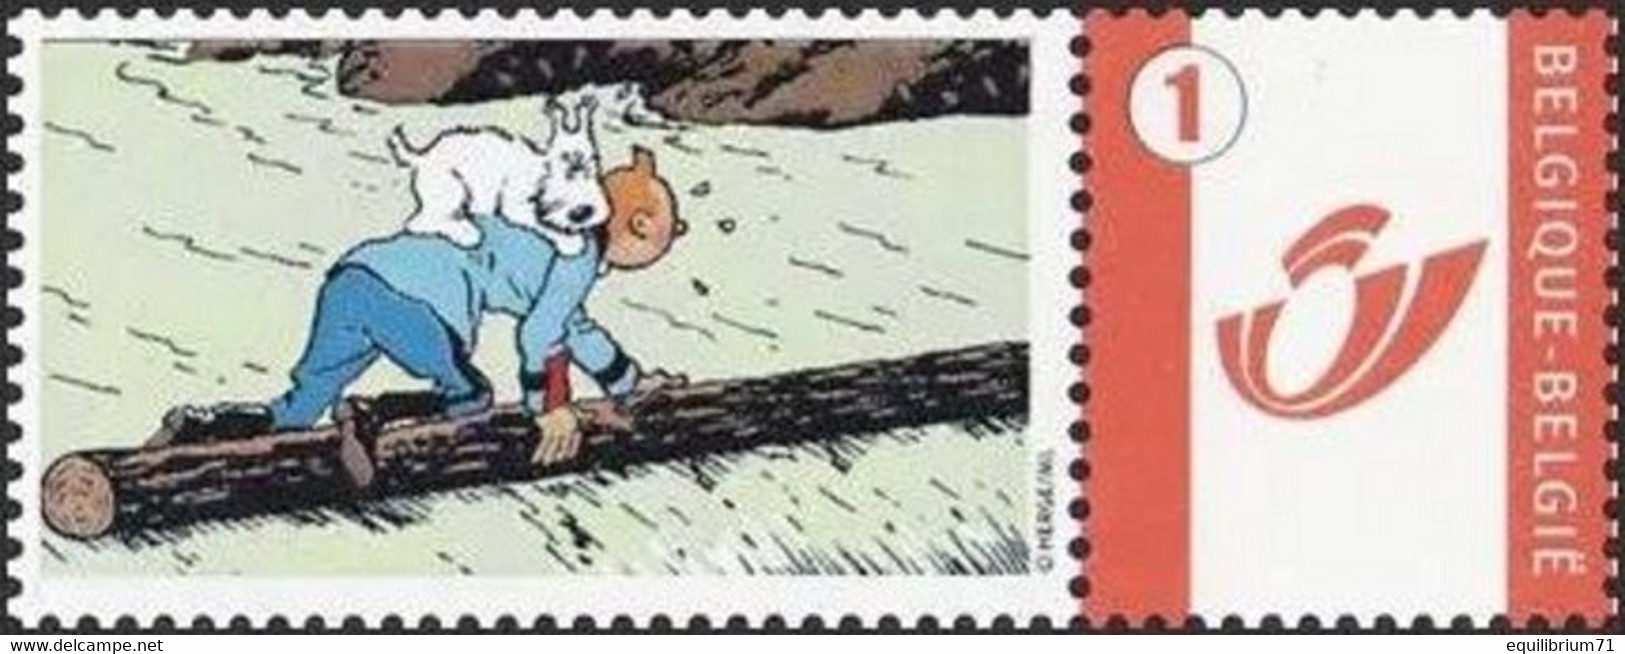 DUOSTAMP** / MYSTAMP**-  Tintin / Kuifje / Tim - En Danger / In Gevaar / In Gefahr / In Danger / (Hergé) - Neufs